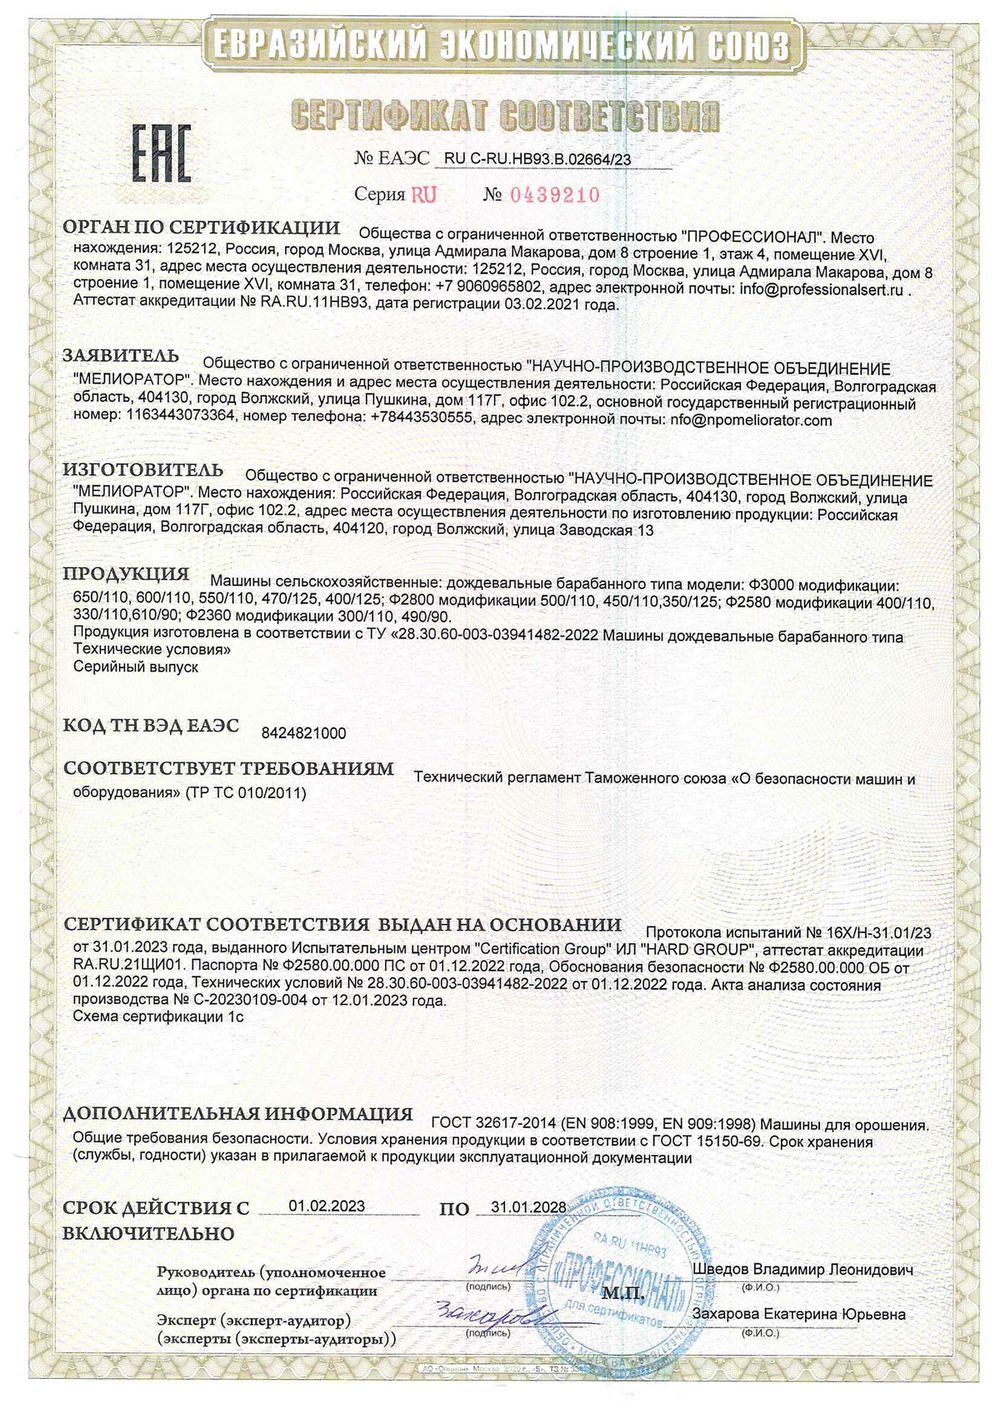 Сертификат соответствия № 0439210